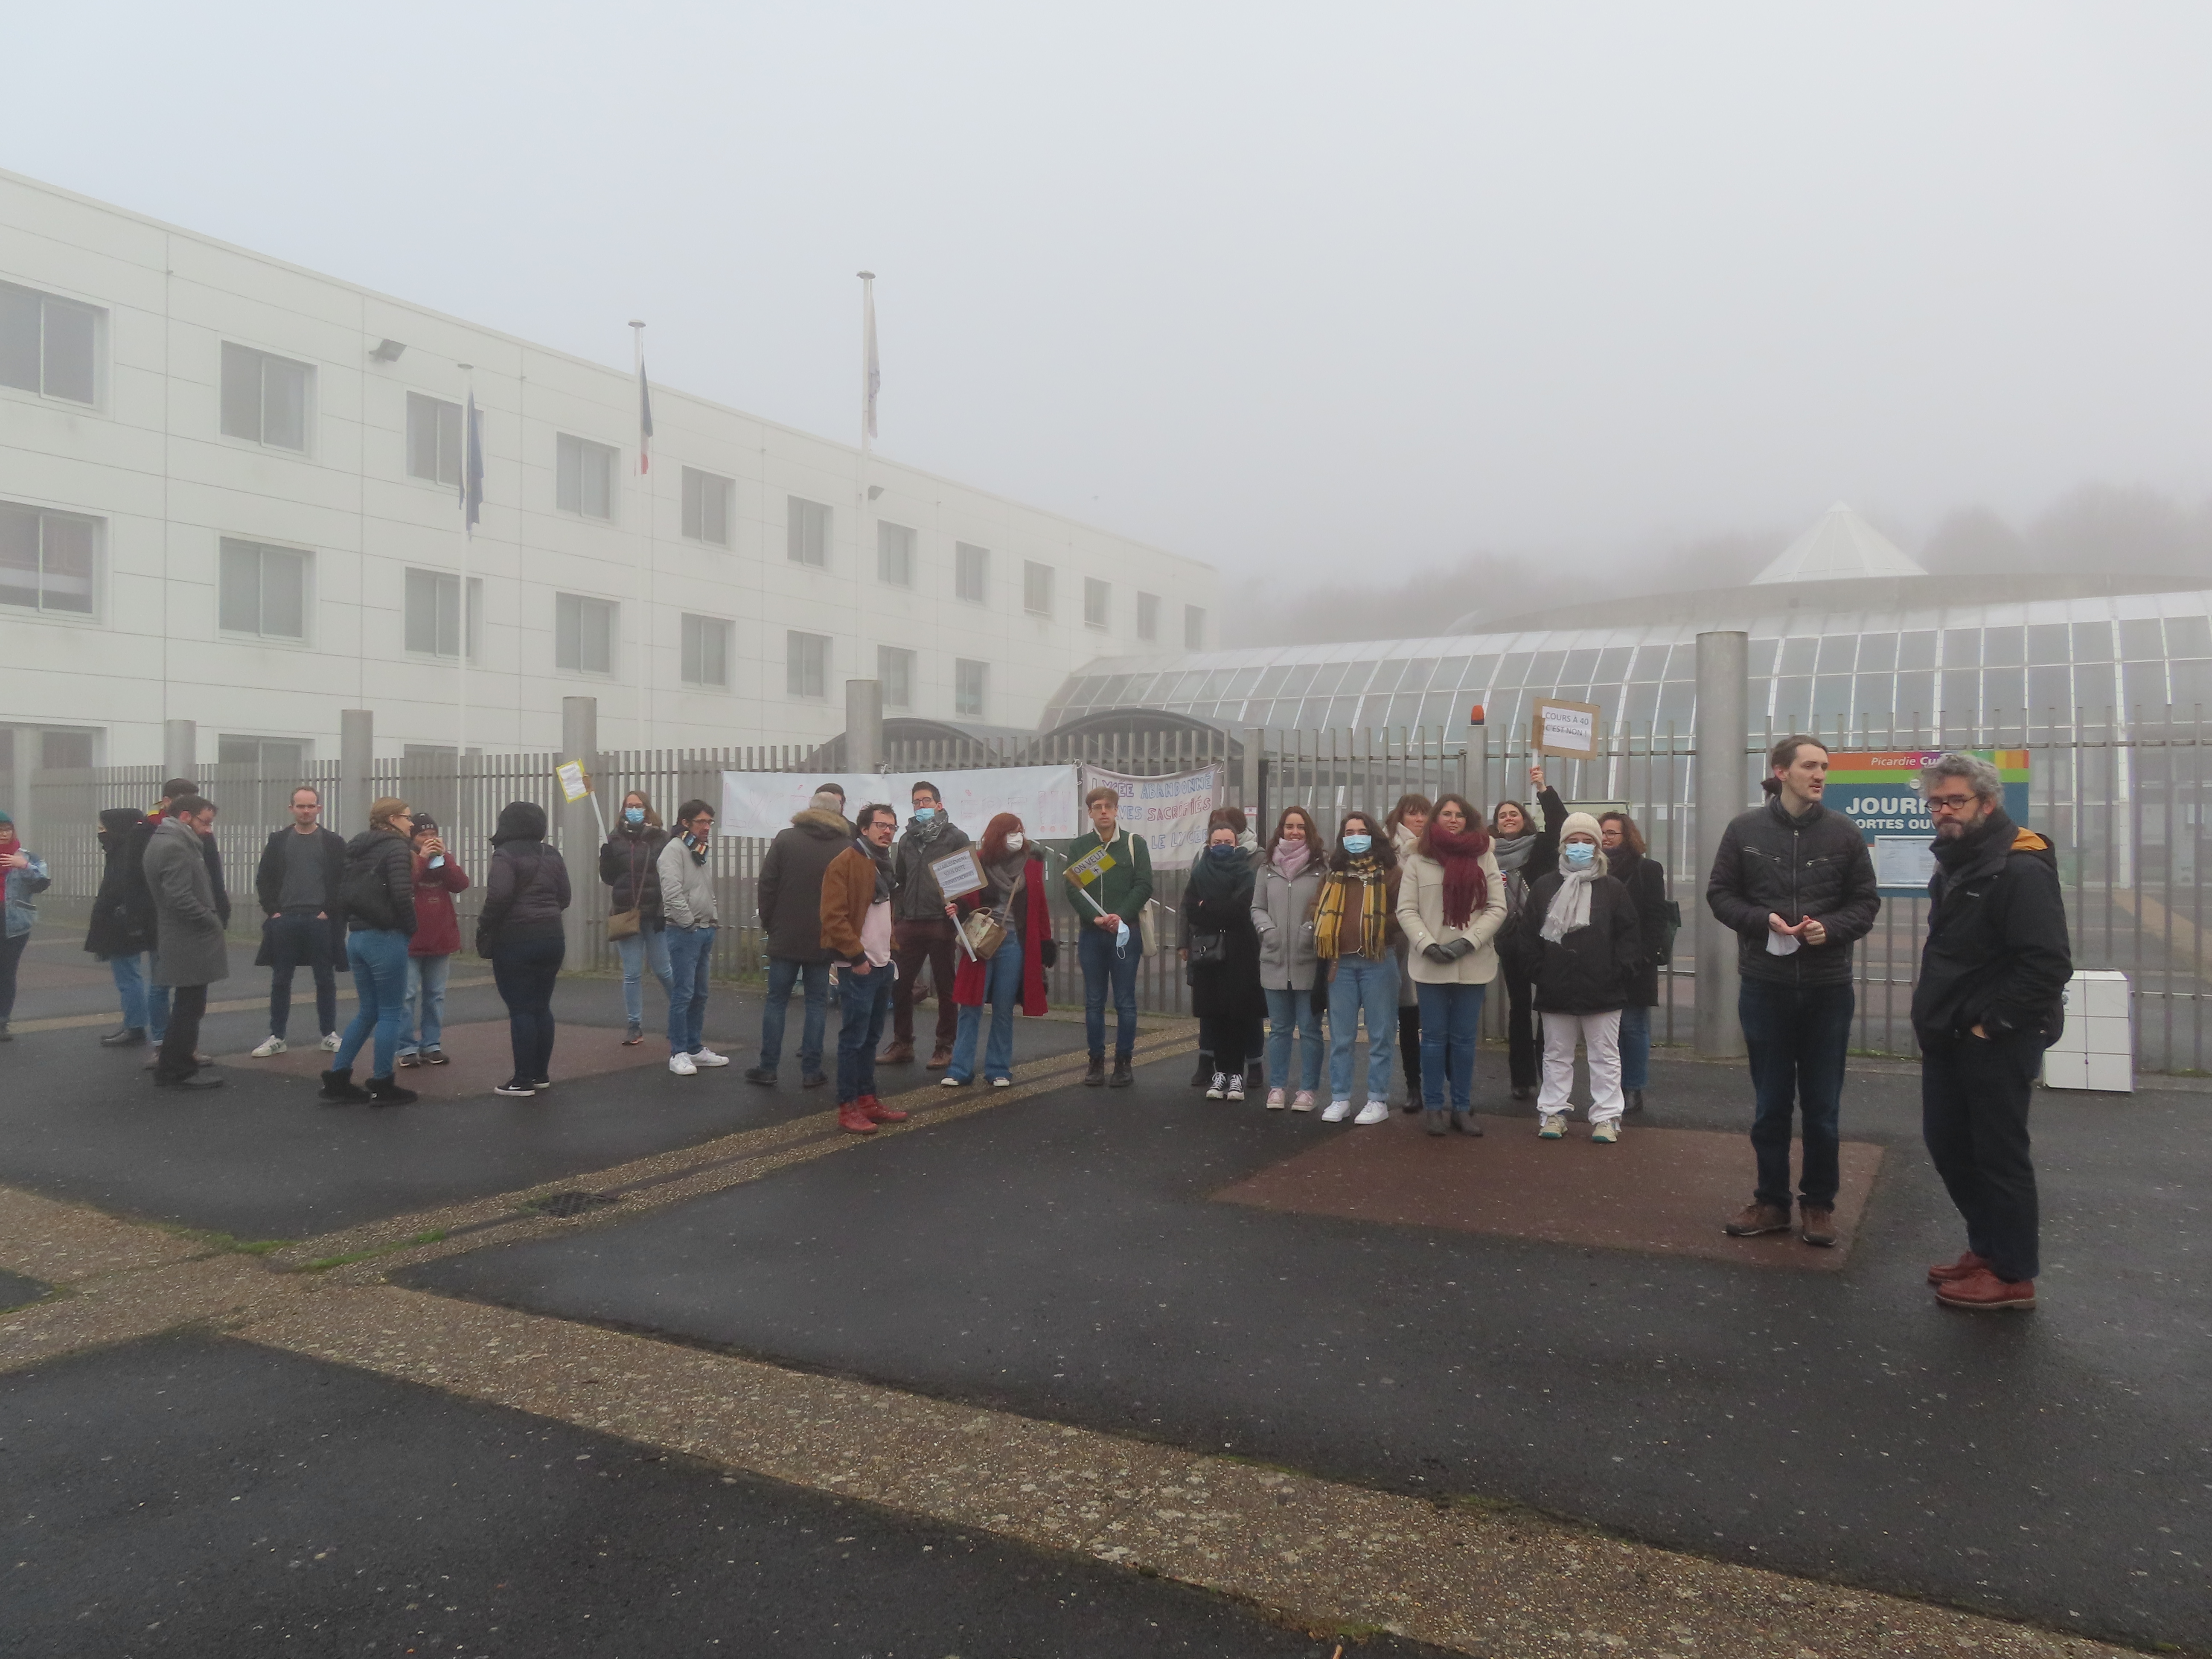 Méru (Oise), ce mercredi matin. Une partie des enseignants du lycée Condorcet était en grève pour réclamer davantage de moyens. LP/Hervé Sénamaud